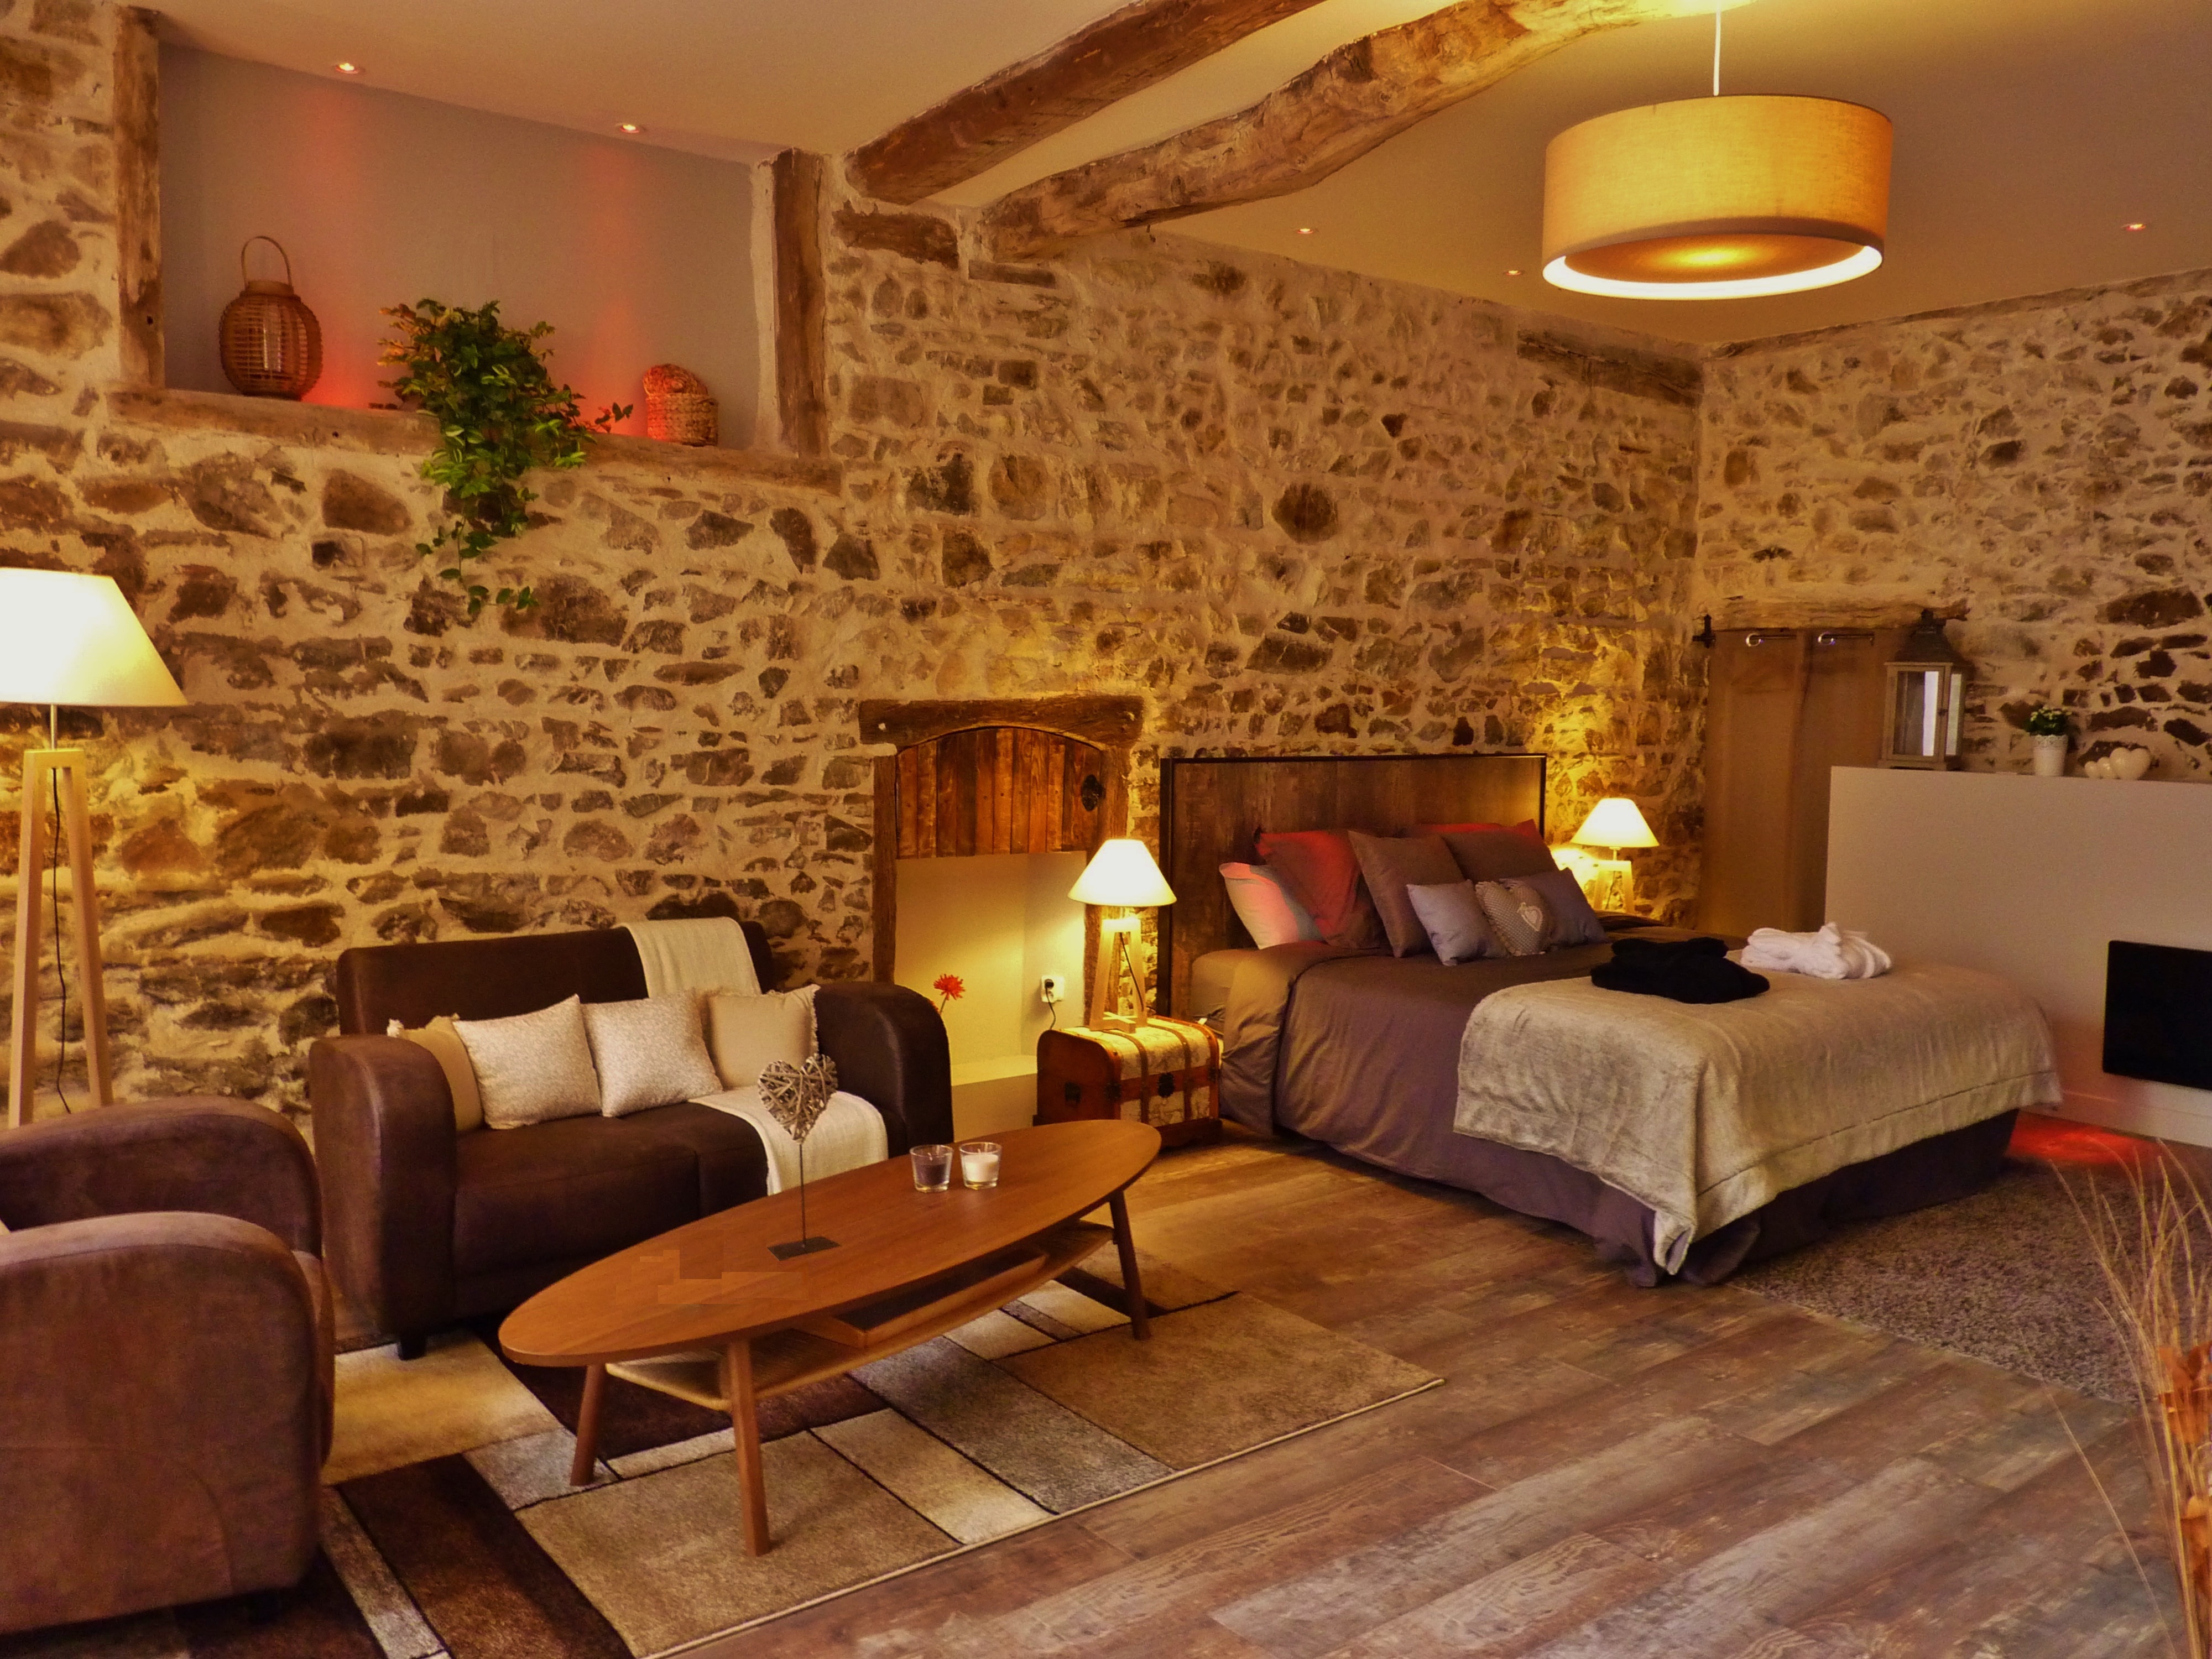 Suite romantique avec jacuzzi et sauna privatifs - Chambres d'hôtes à louer  à Joux, Auvergne Rhône-Alpes, France - Airbnb